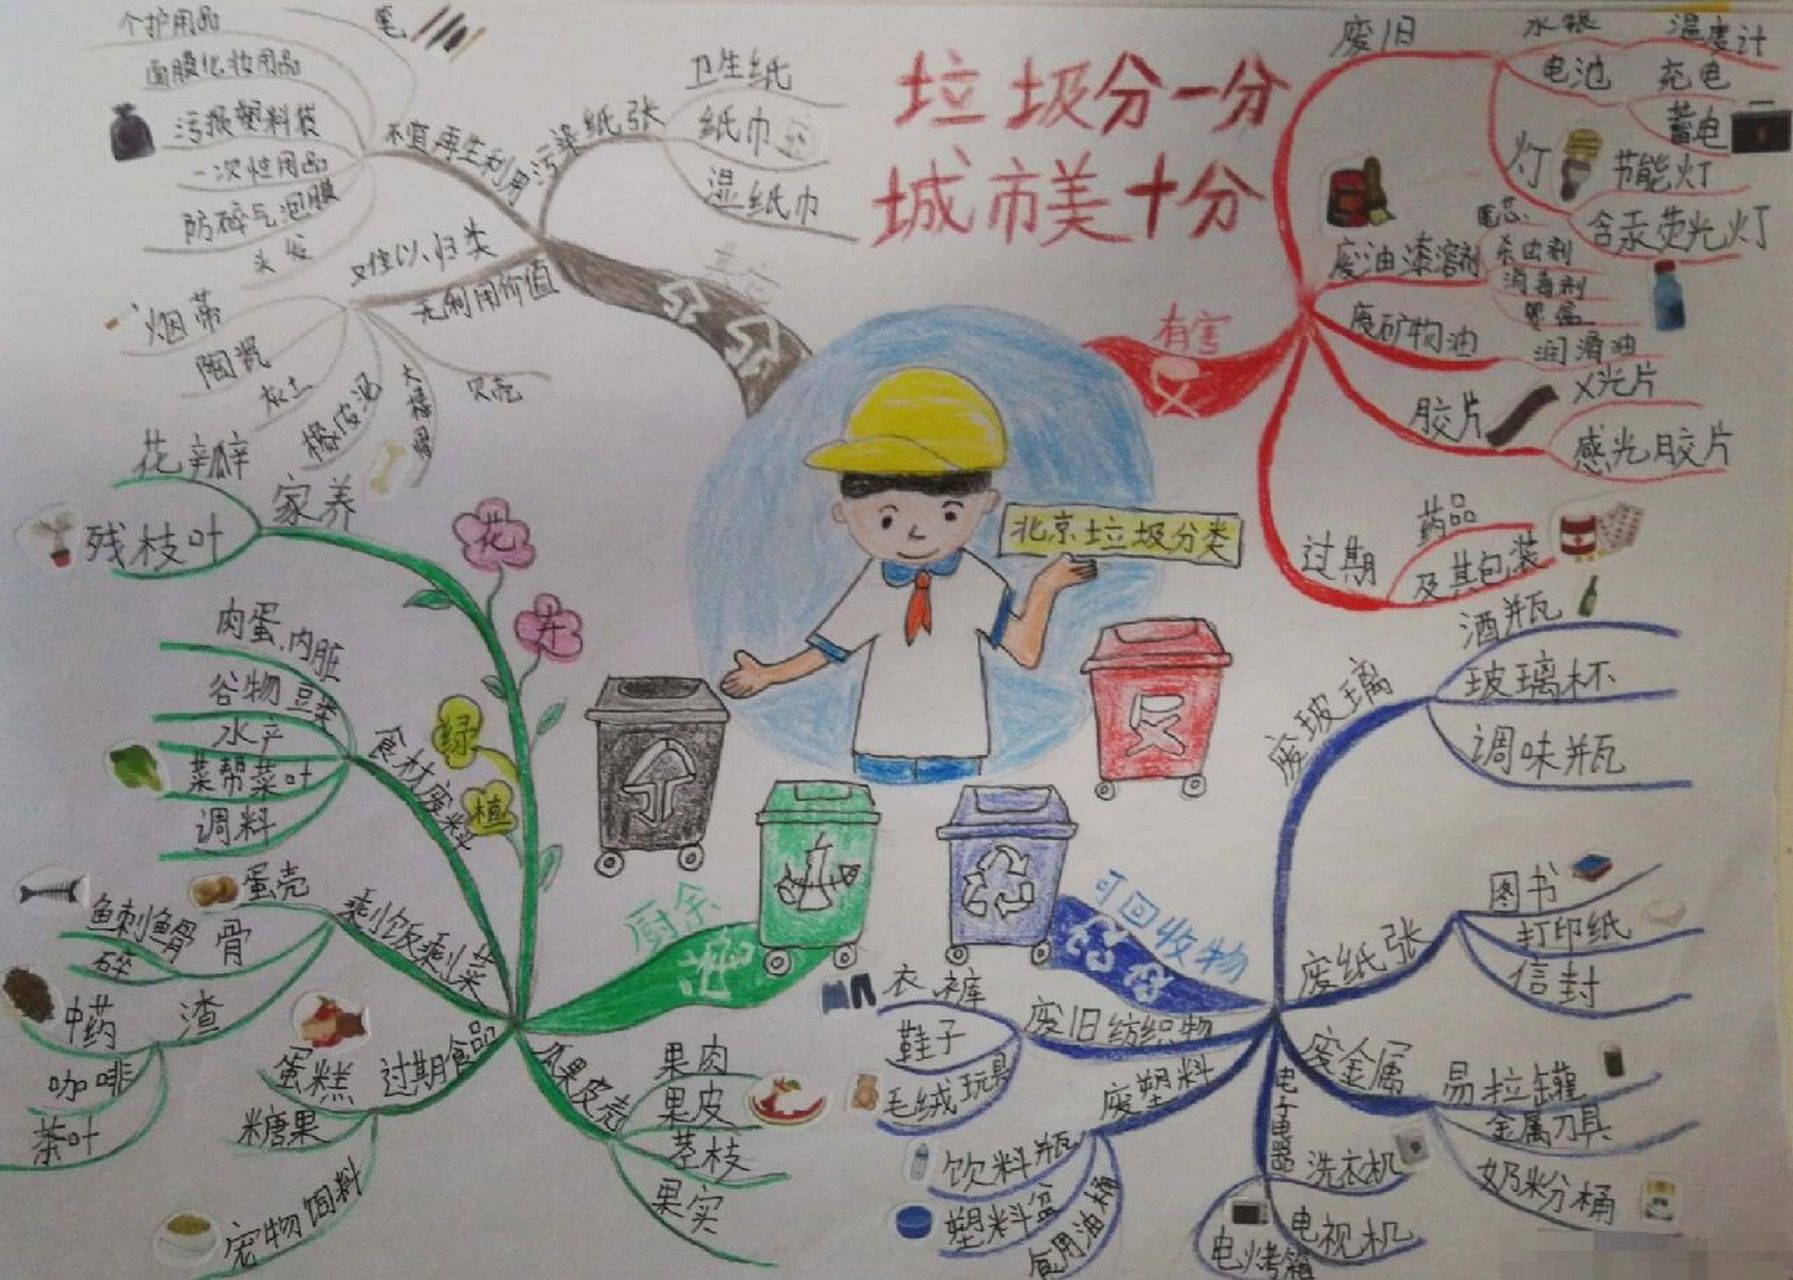 垃圾分类思维导图 三年级时画的 参考思维导图冠军刘艳的作品